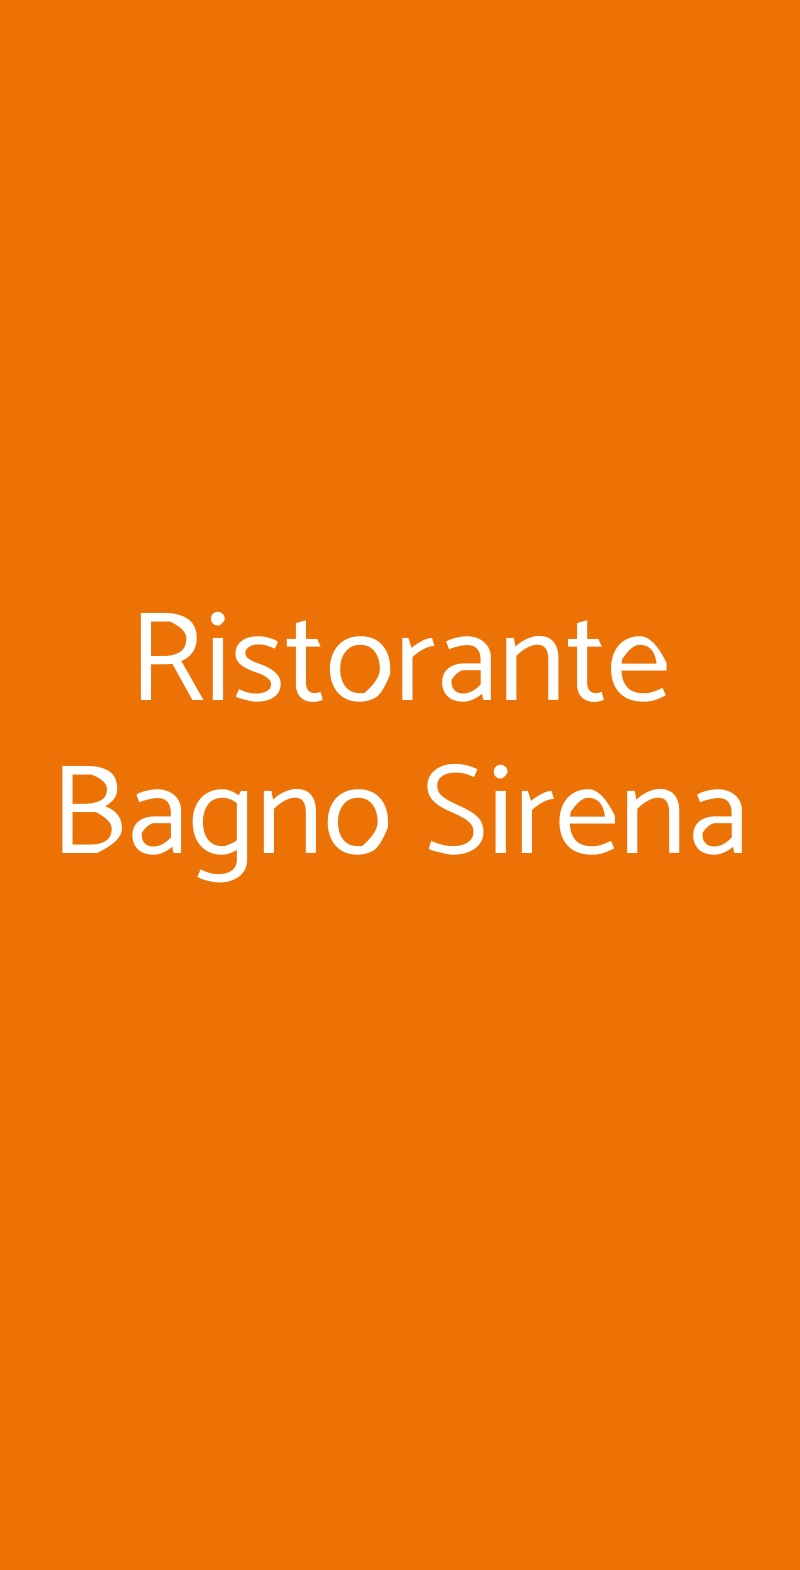 Ristorante Bagno Sirena Marina di Pietrasanta menù 1 pagina